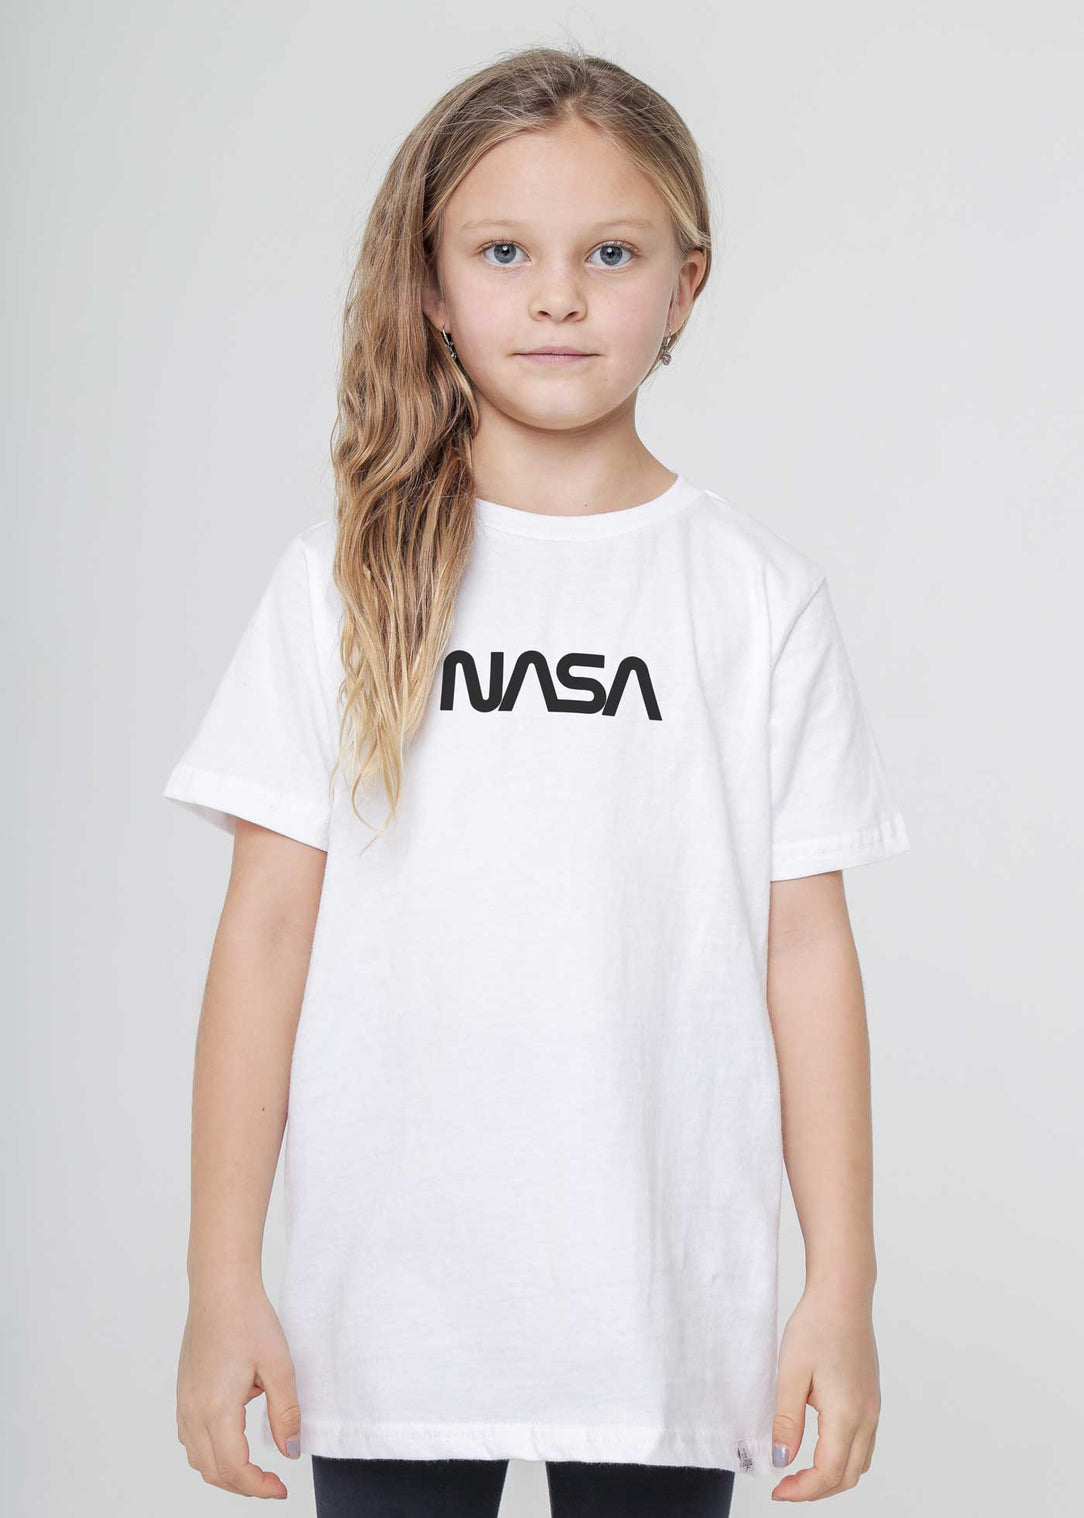 NASA Voyage Badge Kid's White T-Shirt — Kid Dangerous